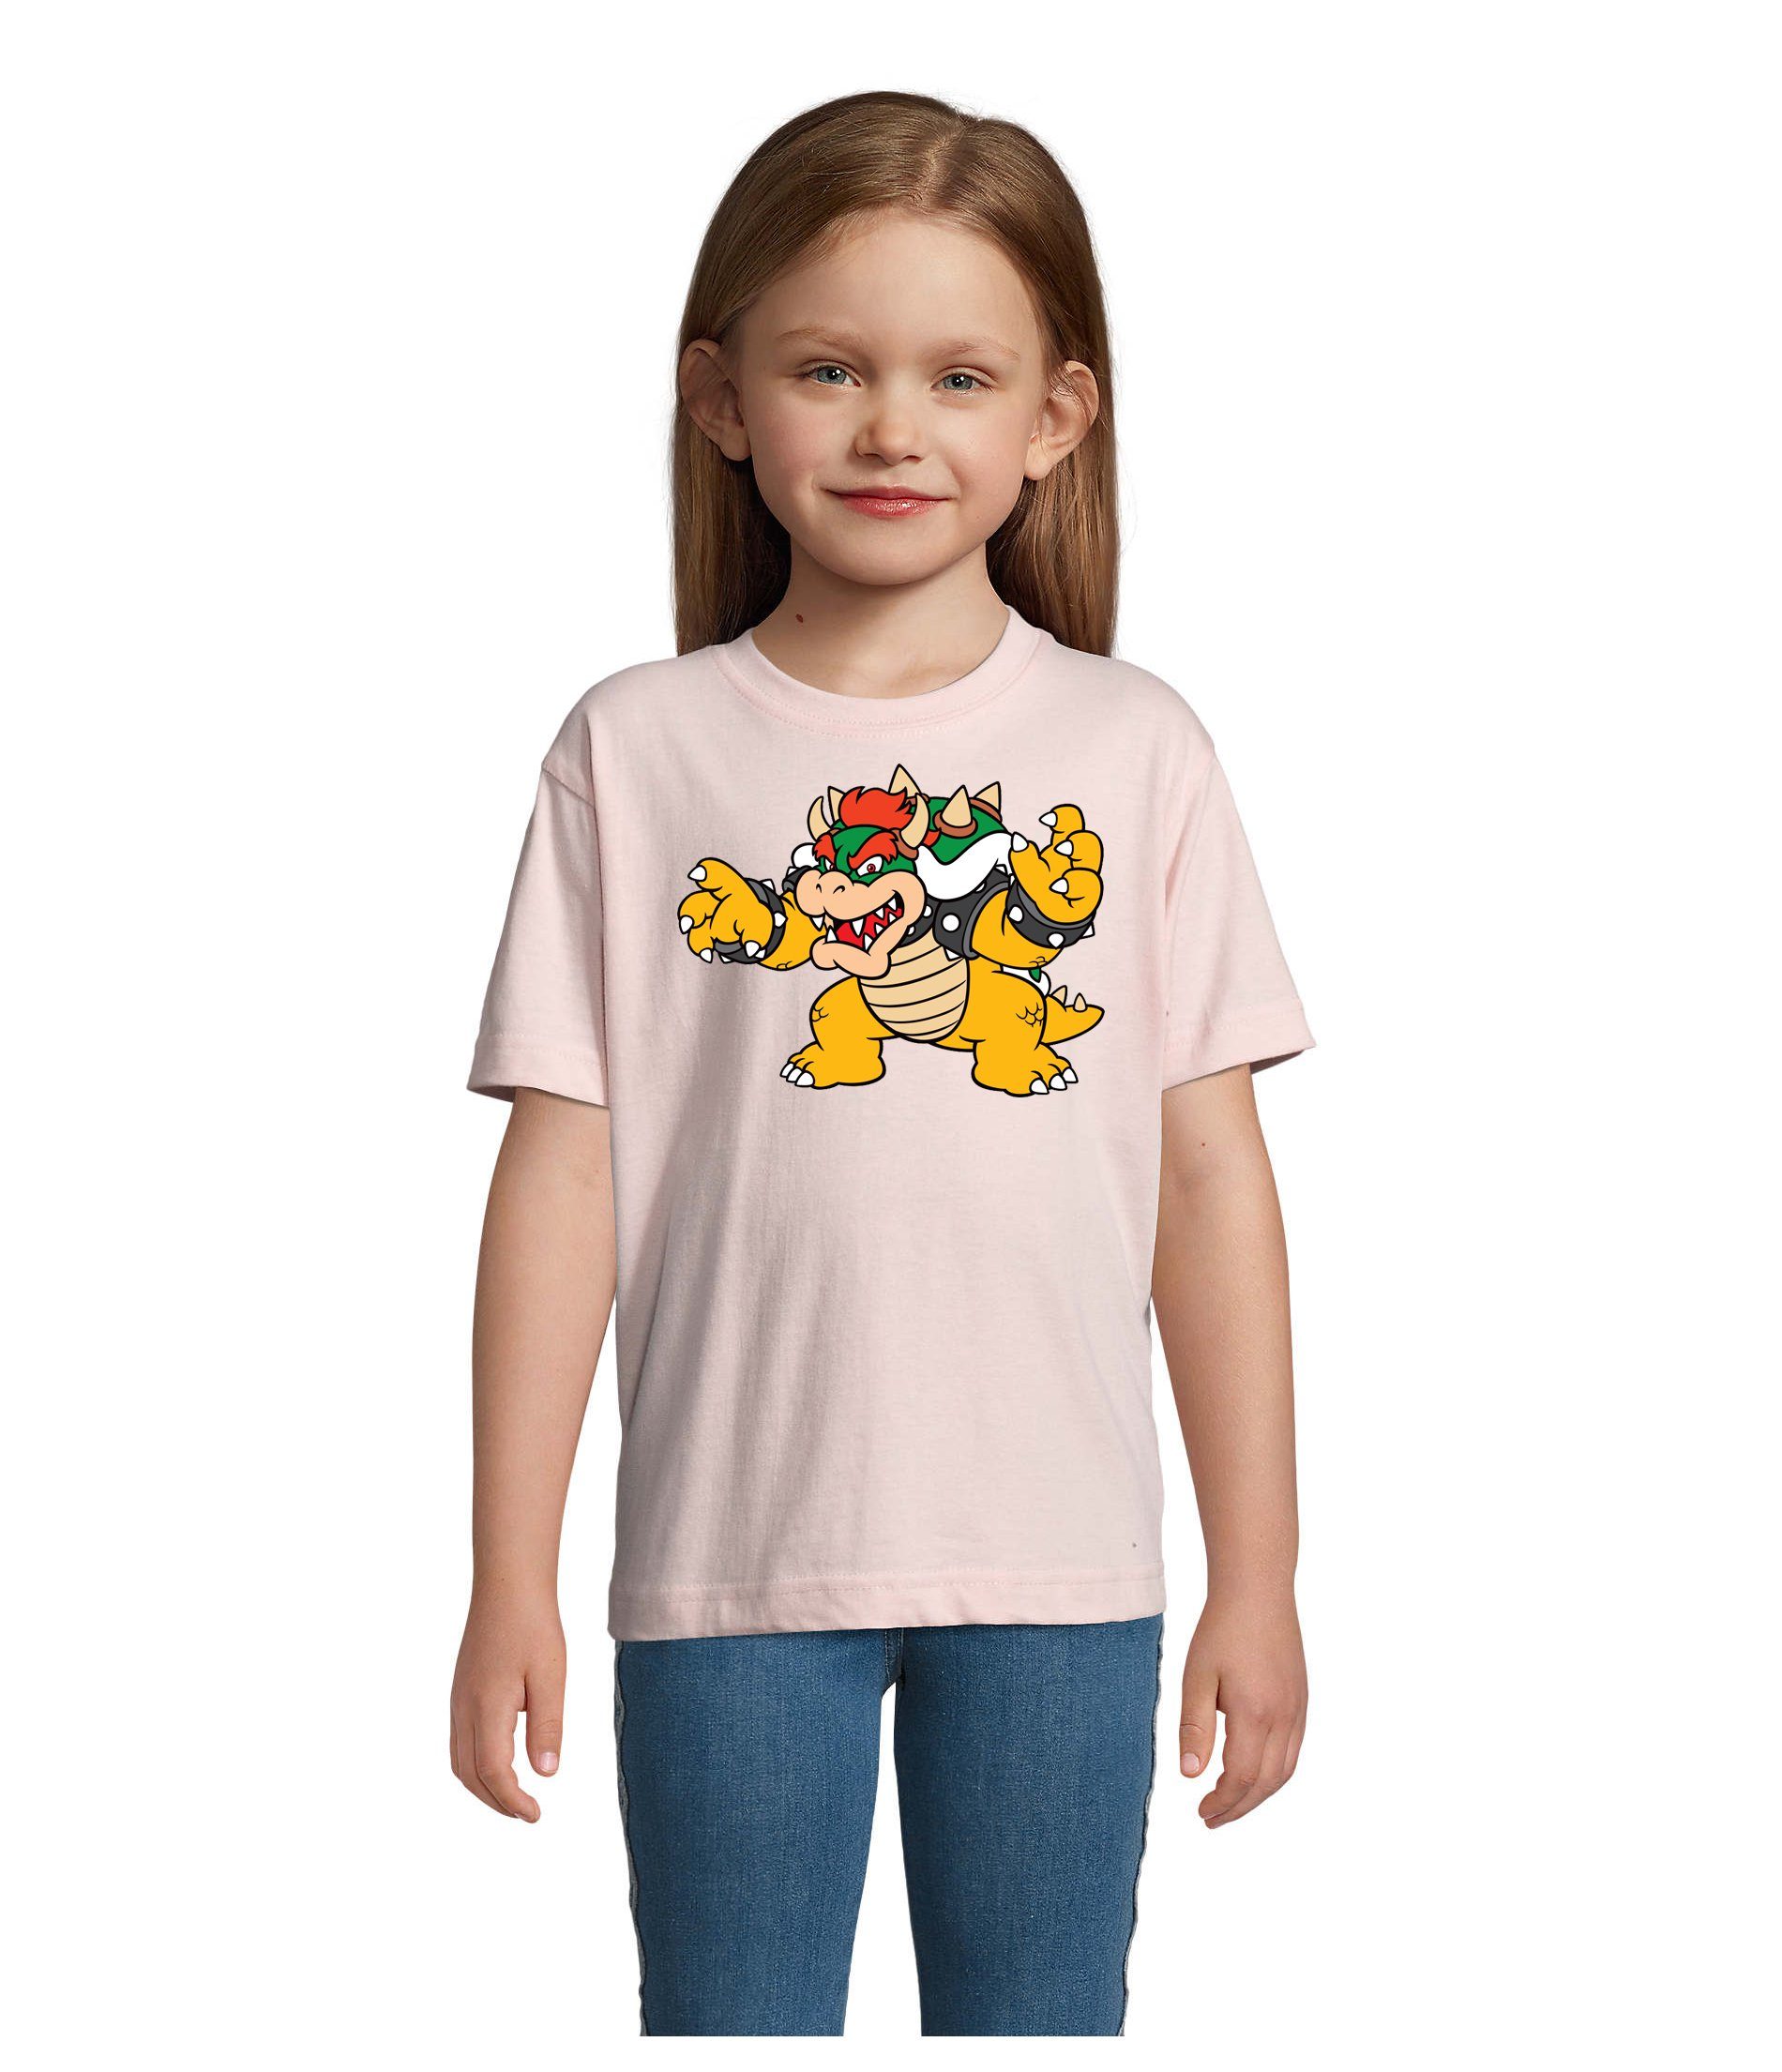 Blondie & Brownie T-Shirt Kinder Bowser Nintendo Mario Yoshi Luigi Game Gamer Konsole Rosa